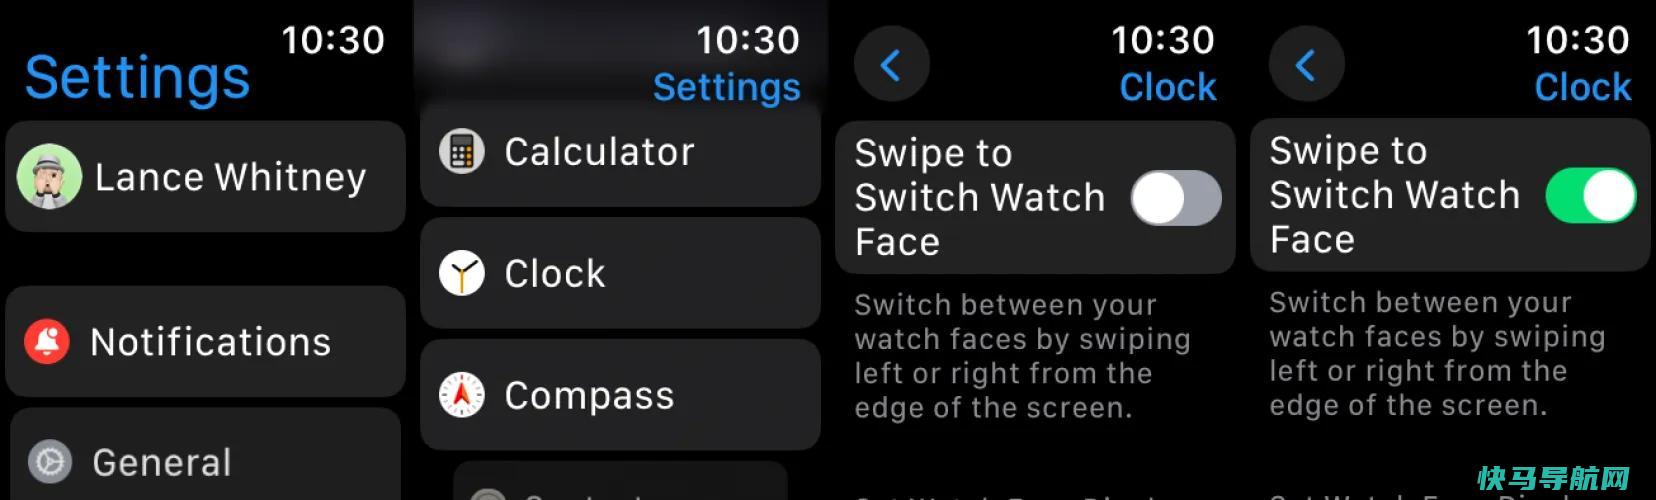 文章:《切换你的智能手表：如何改变和调整Apple Watch的面部》_配图2